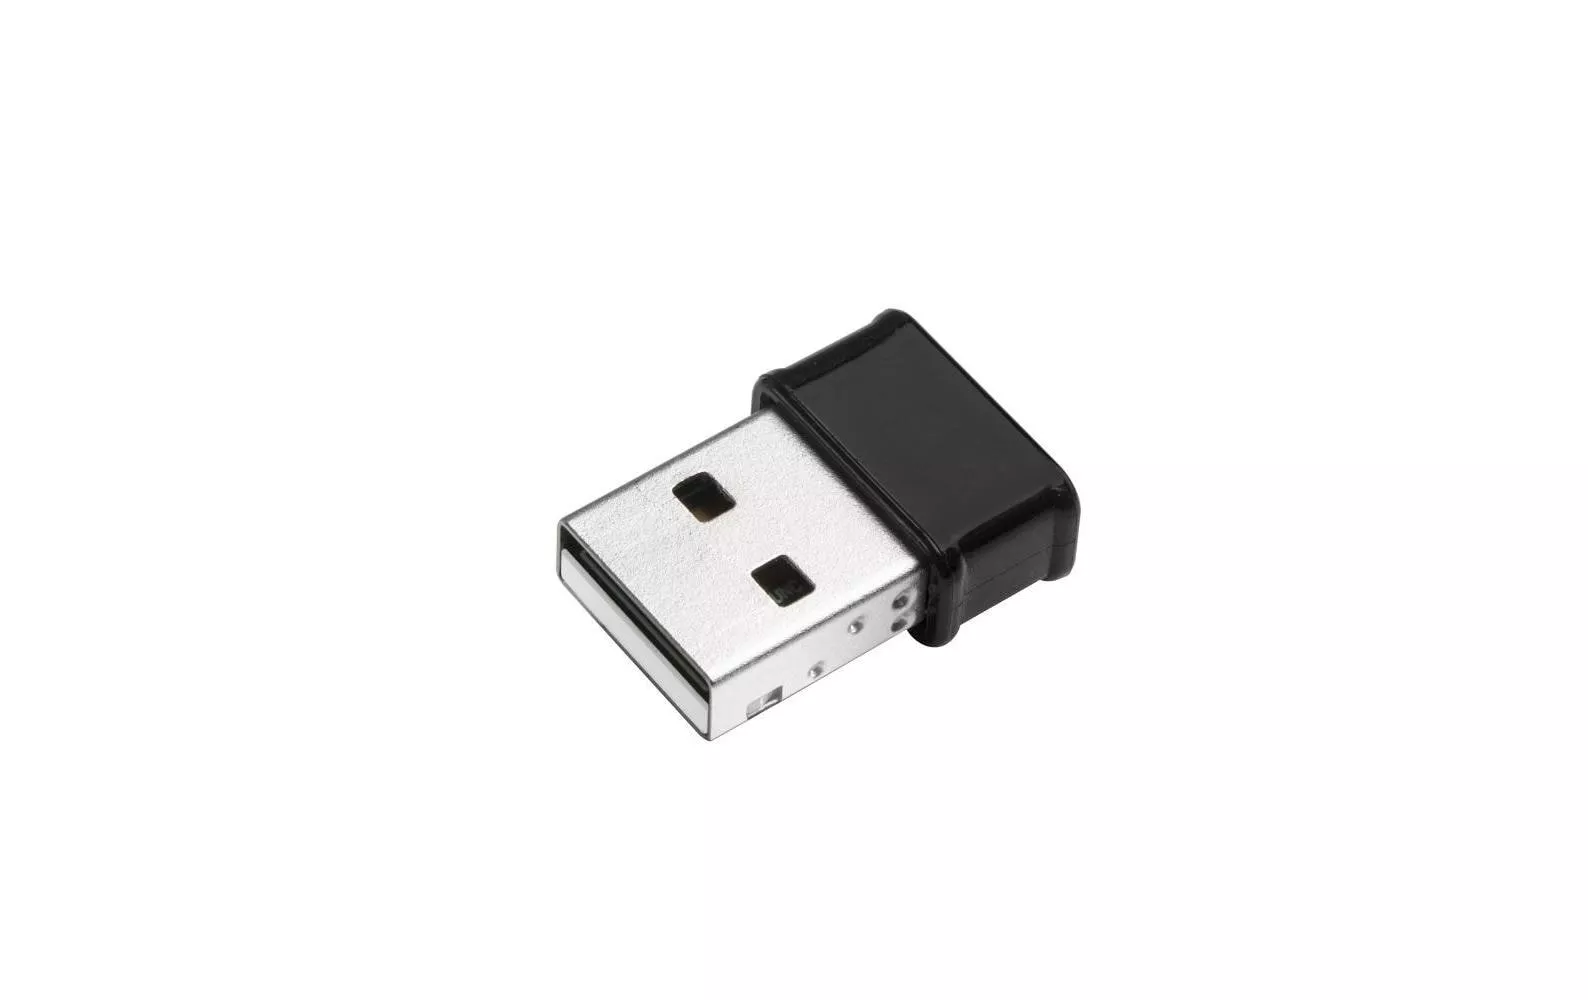 WLAN-AC USB-Stick Nano EW-7822ULC